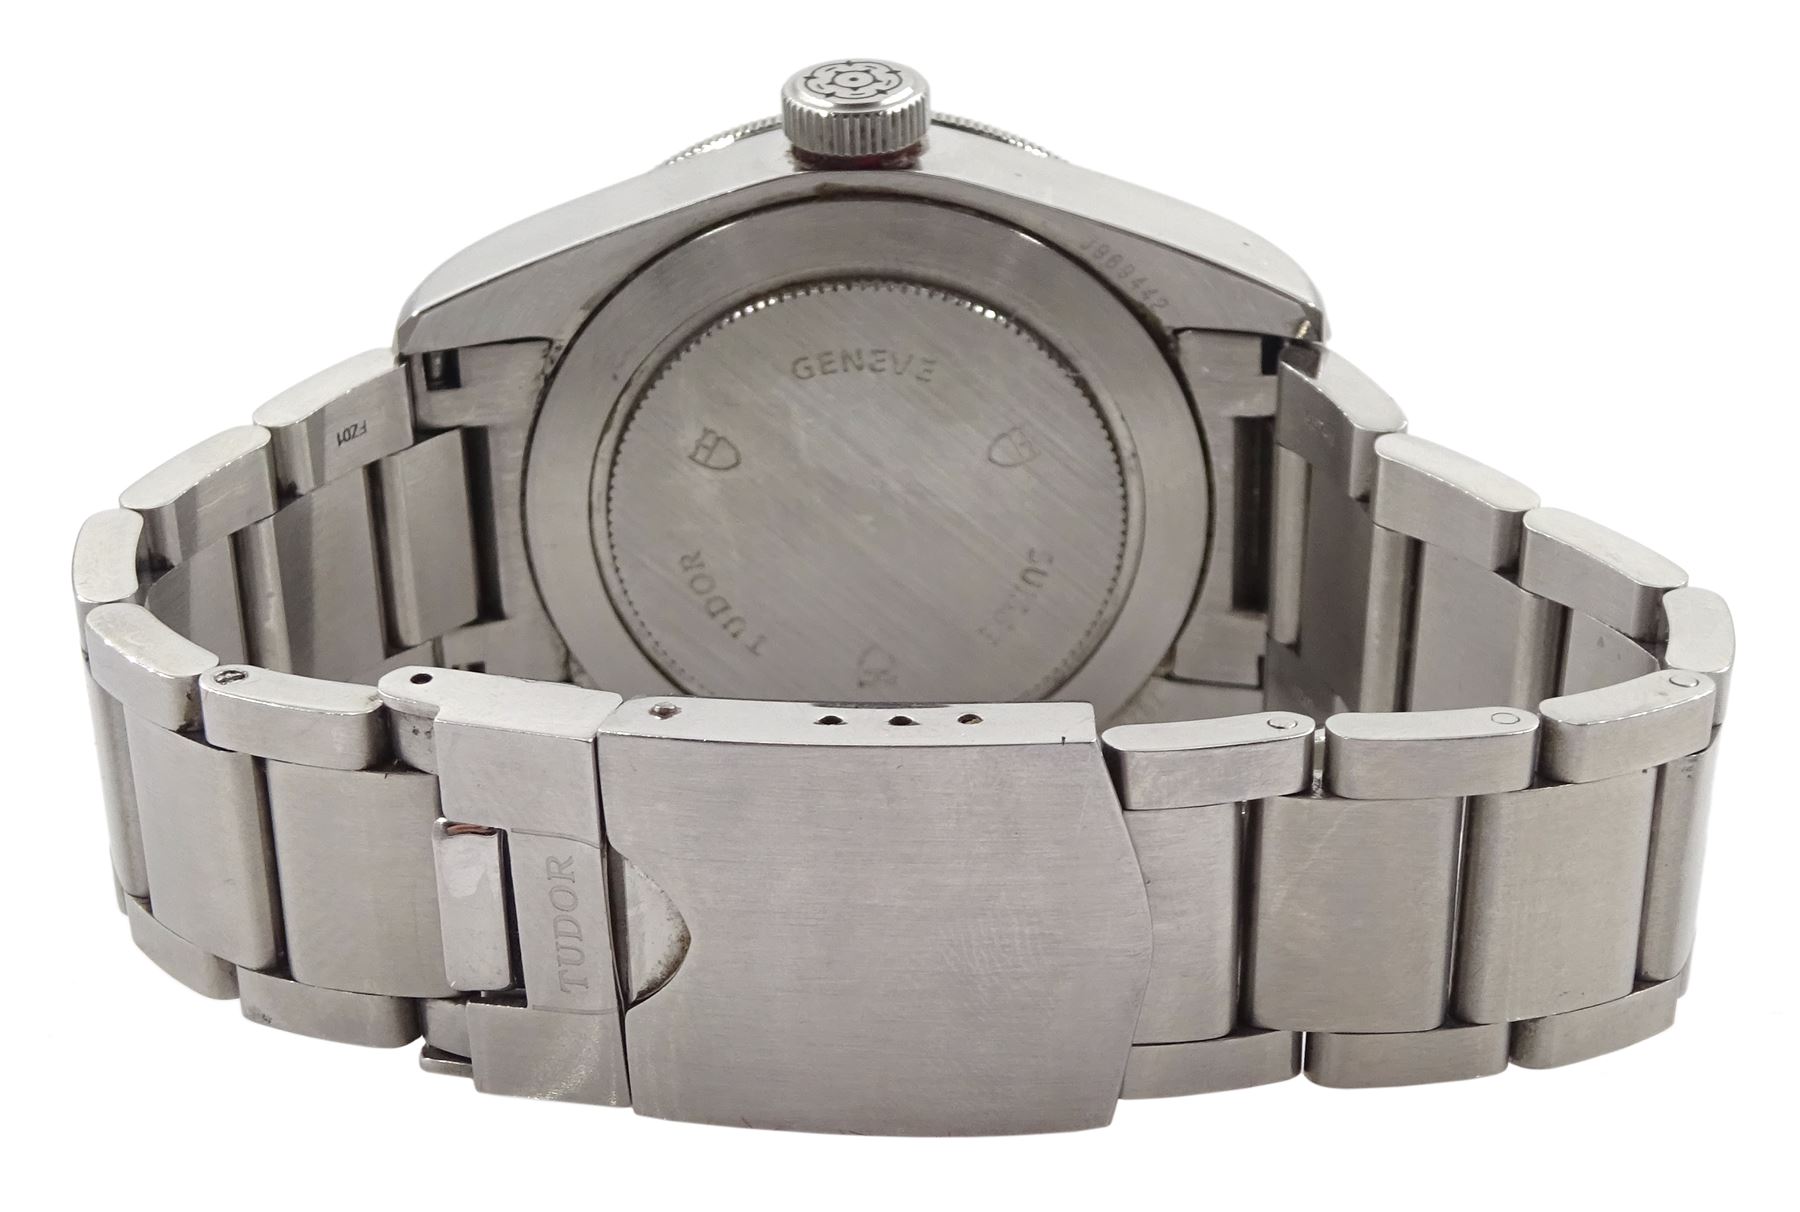 Tudor Heritage Black Bay 200m Rotor self-winding gentleman's stainless steel bracelet wristwatch - Image 7 of 9